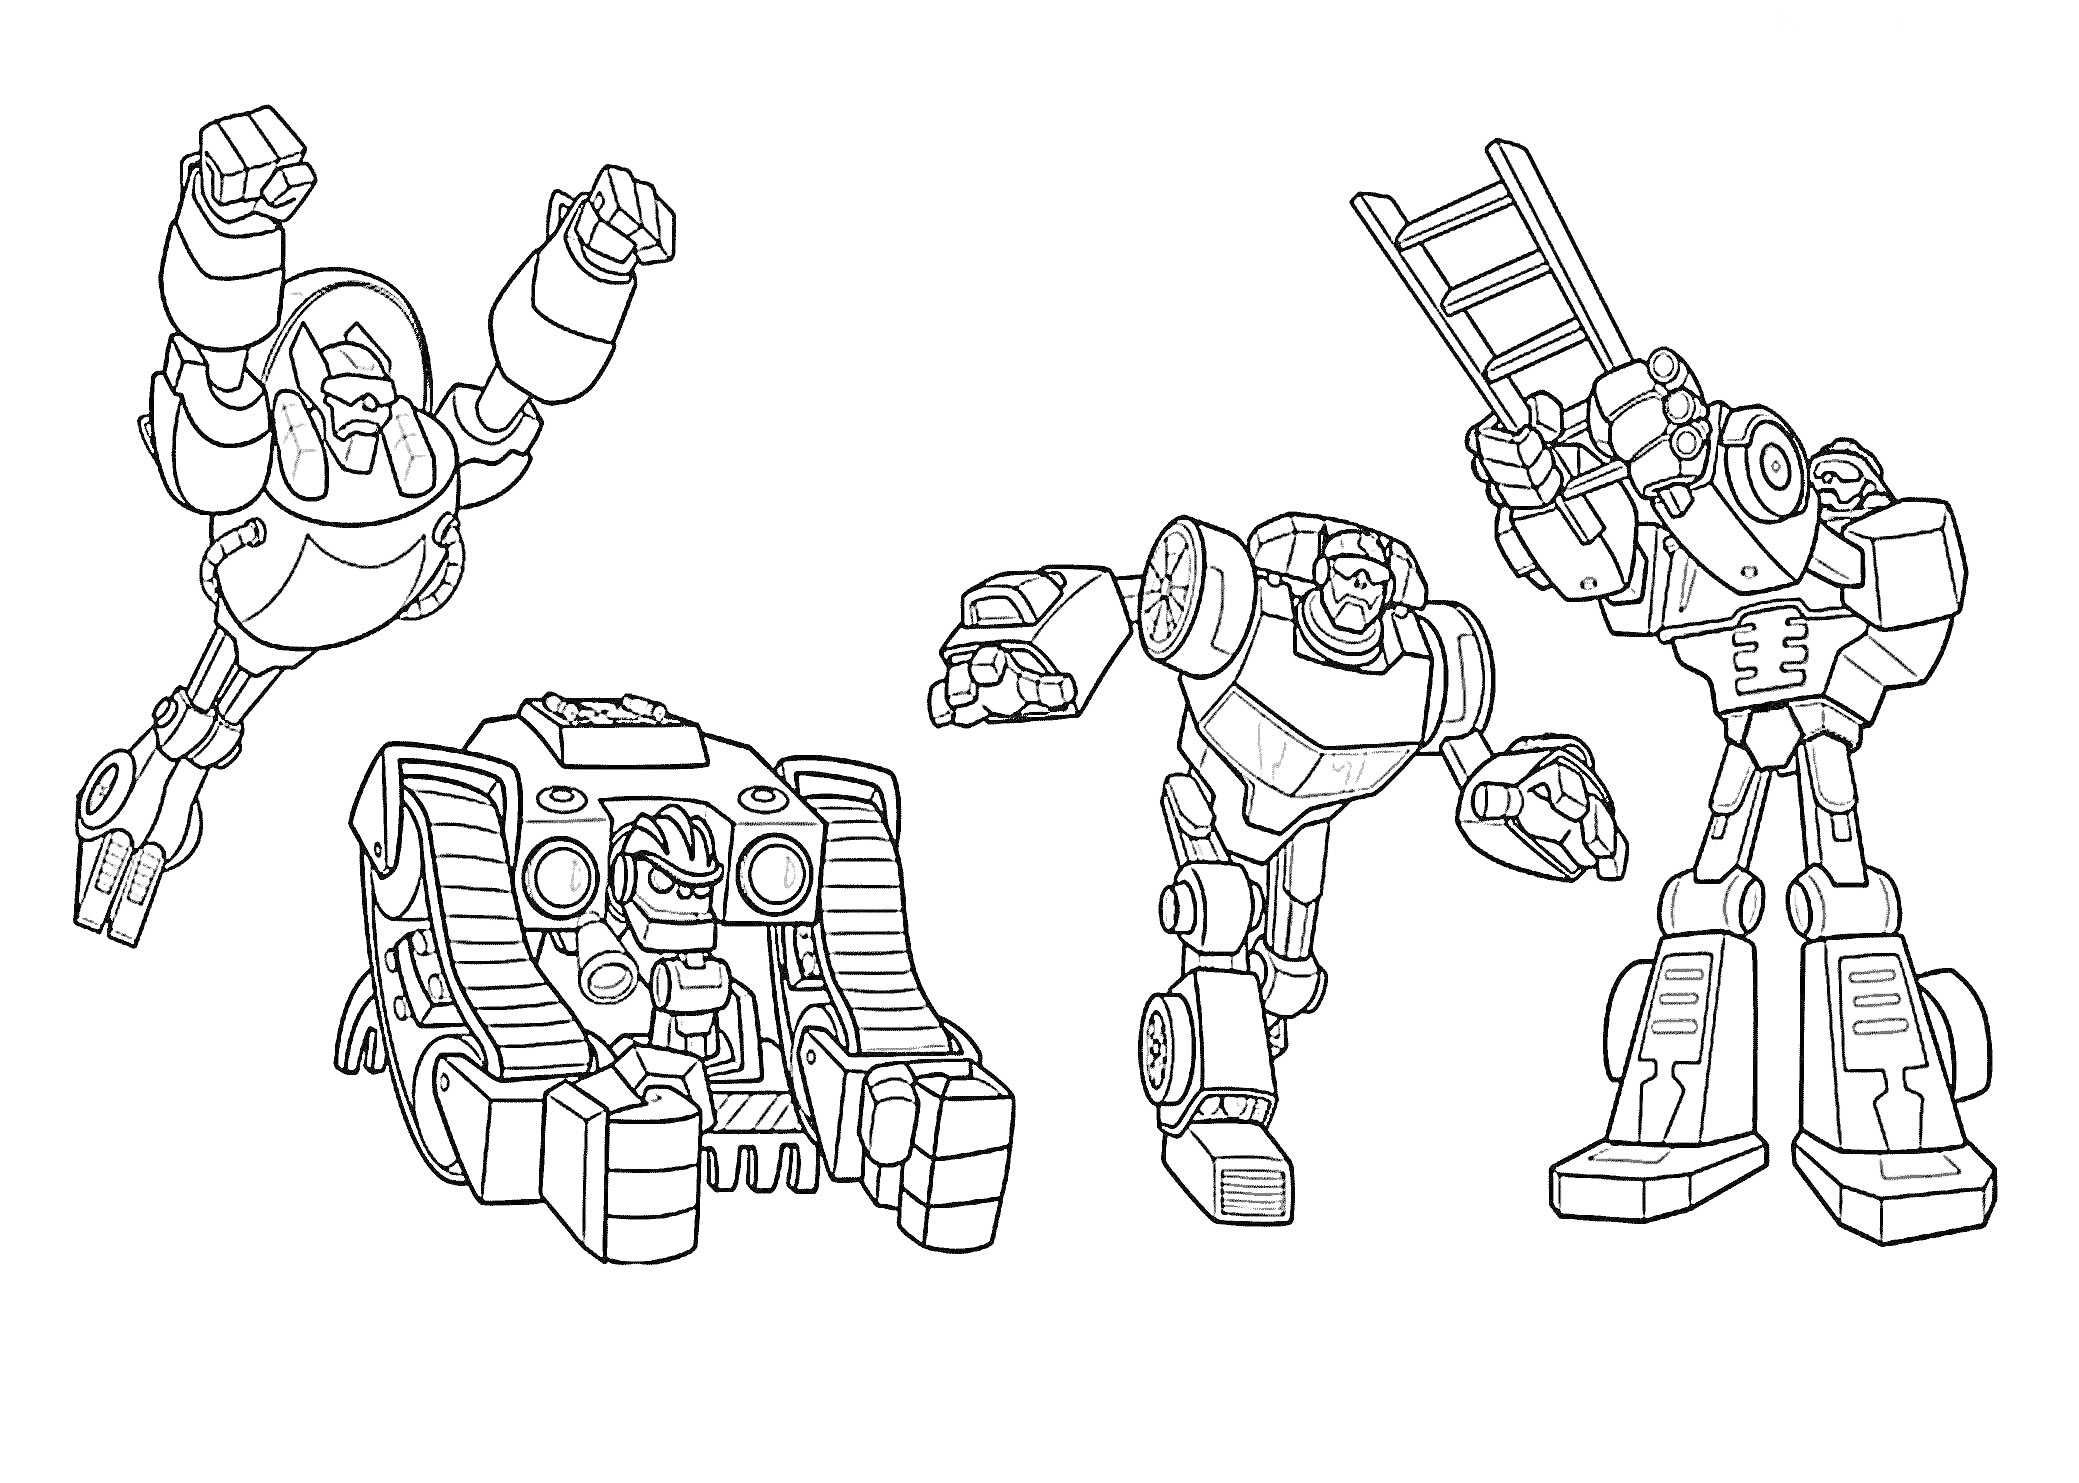 Раскраска Четыре робота: робот, прыгающий с поднятыми руками; робот-гусеница с двумя глазами-лампочками; робот с согнутыми руками для удара; робот с лестницей вместо одной руки